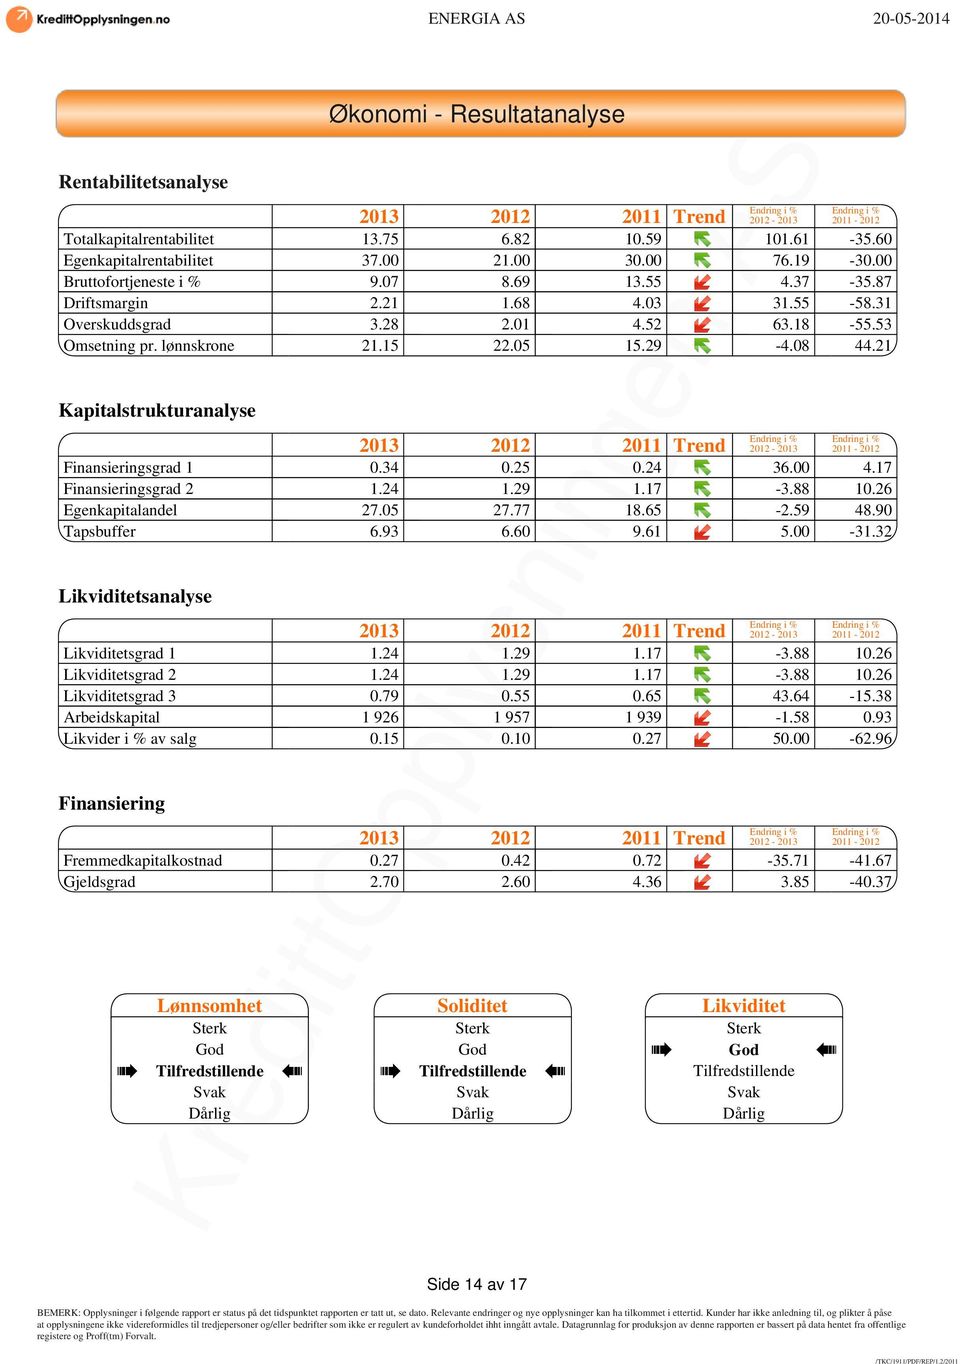 08 44.21 Kapitalstrukturanalyse Endring i % Endring i % 2013 2012 2011 Trend 2012-2013 2011-2012 Finansieringsgrad 1 0.34 0.25 0.24 36.00 4.17 Finansieringsgrad 2 1.24 1.29 1.17-3.88 10.